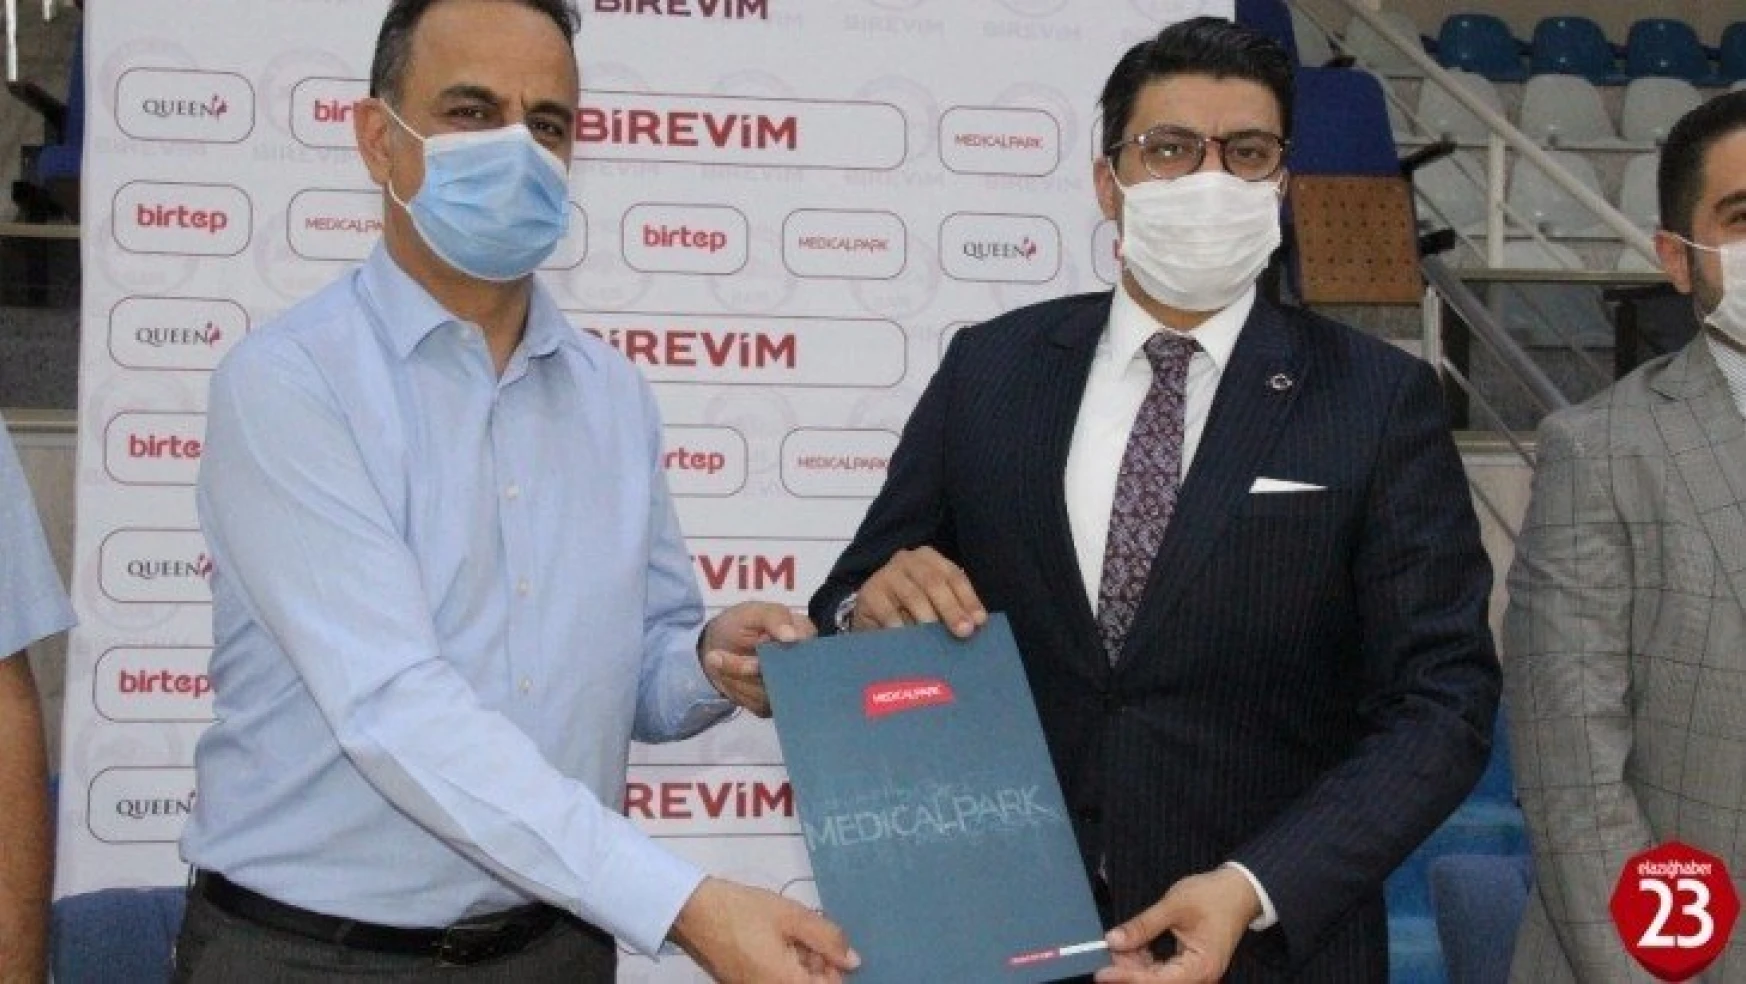 Medical Park, Elazığ İl Özel İdare basketbol takımının sağlık sponsoru oldu